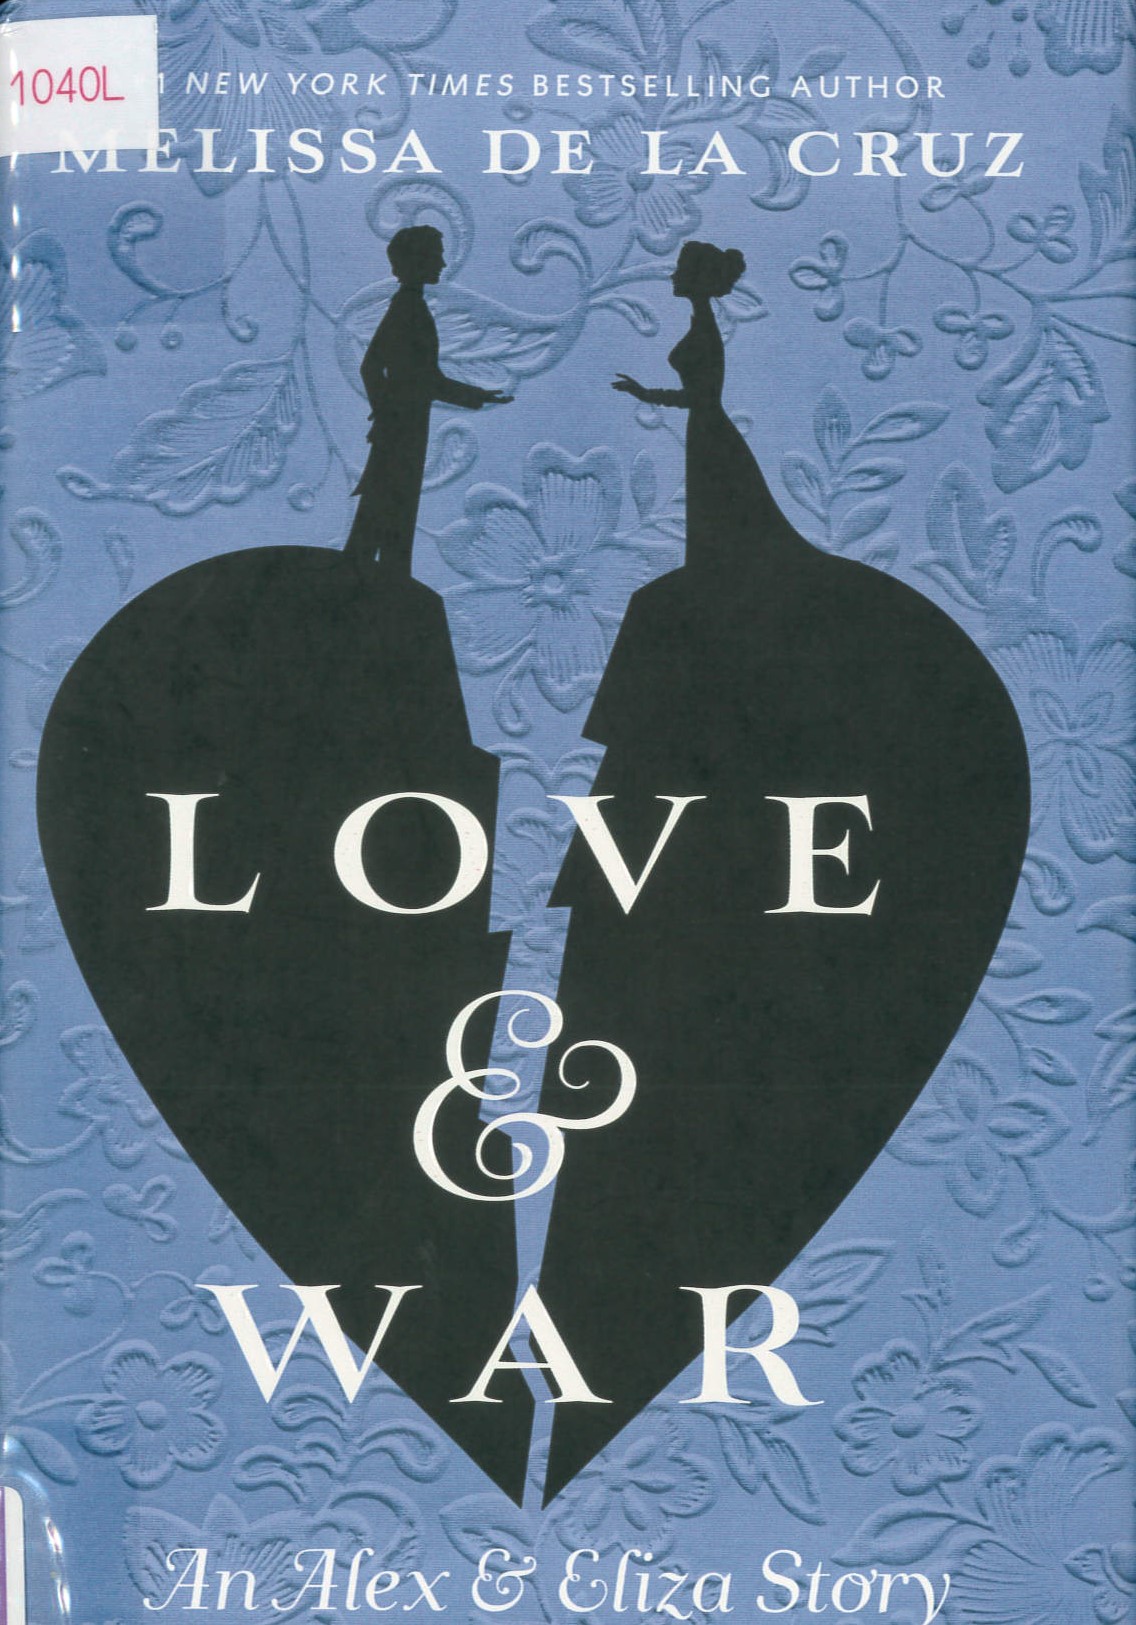 Love & war : an Alex & Eliza story /